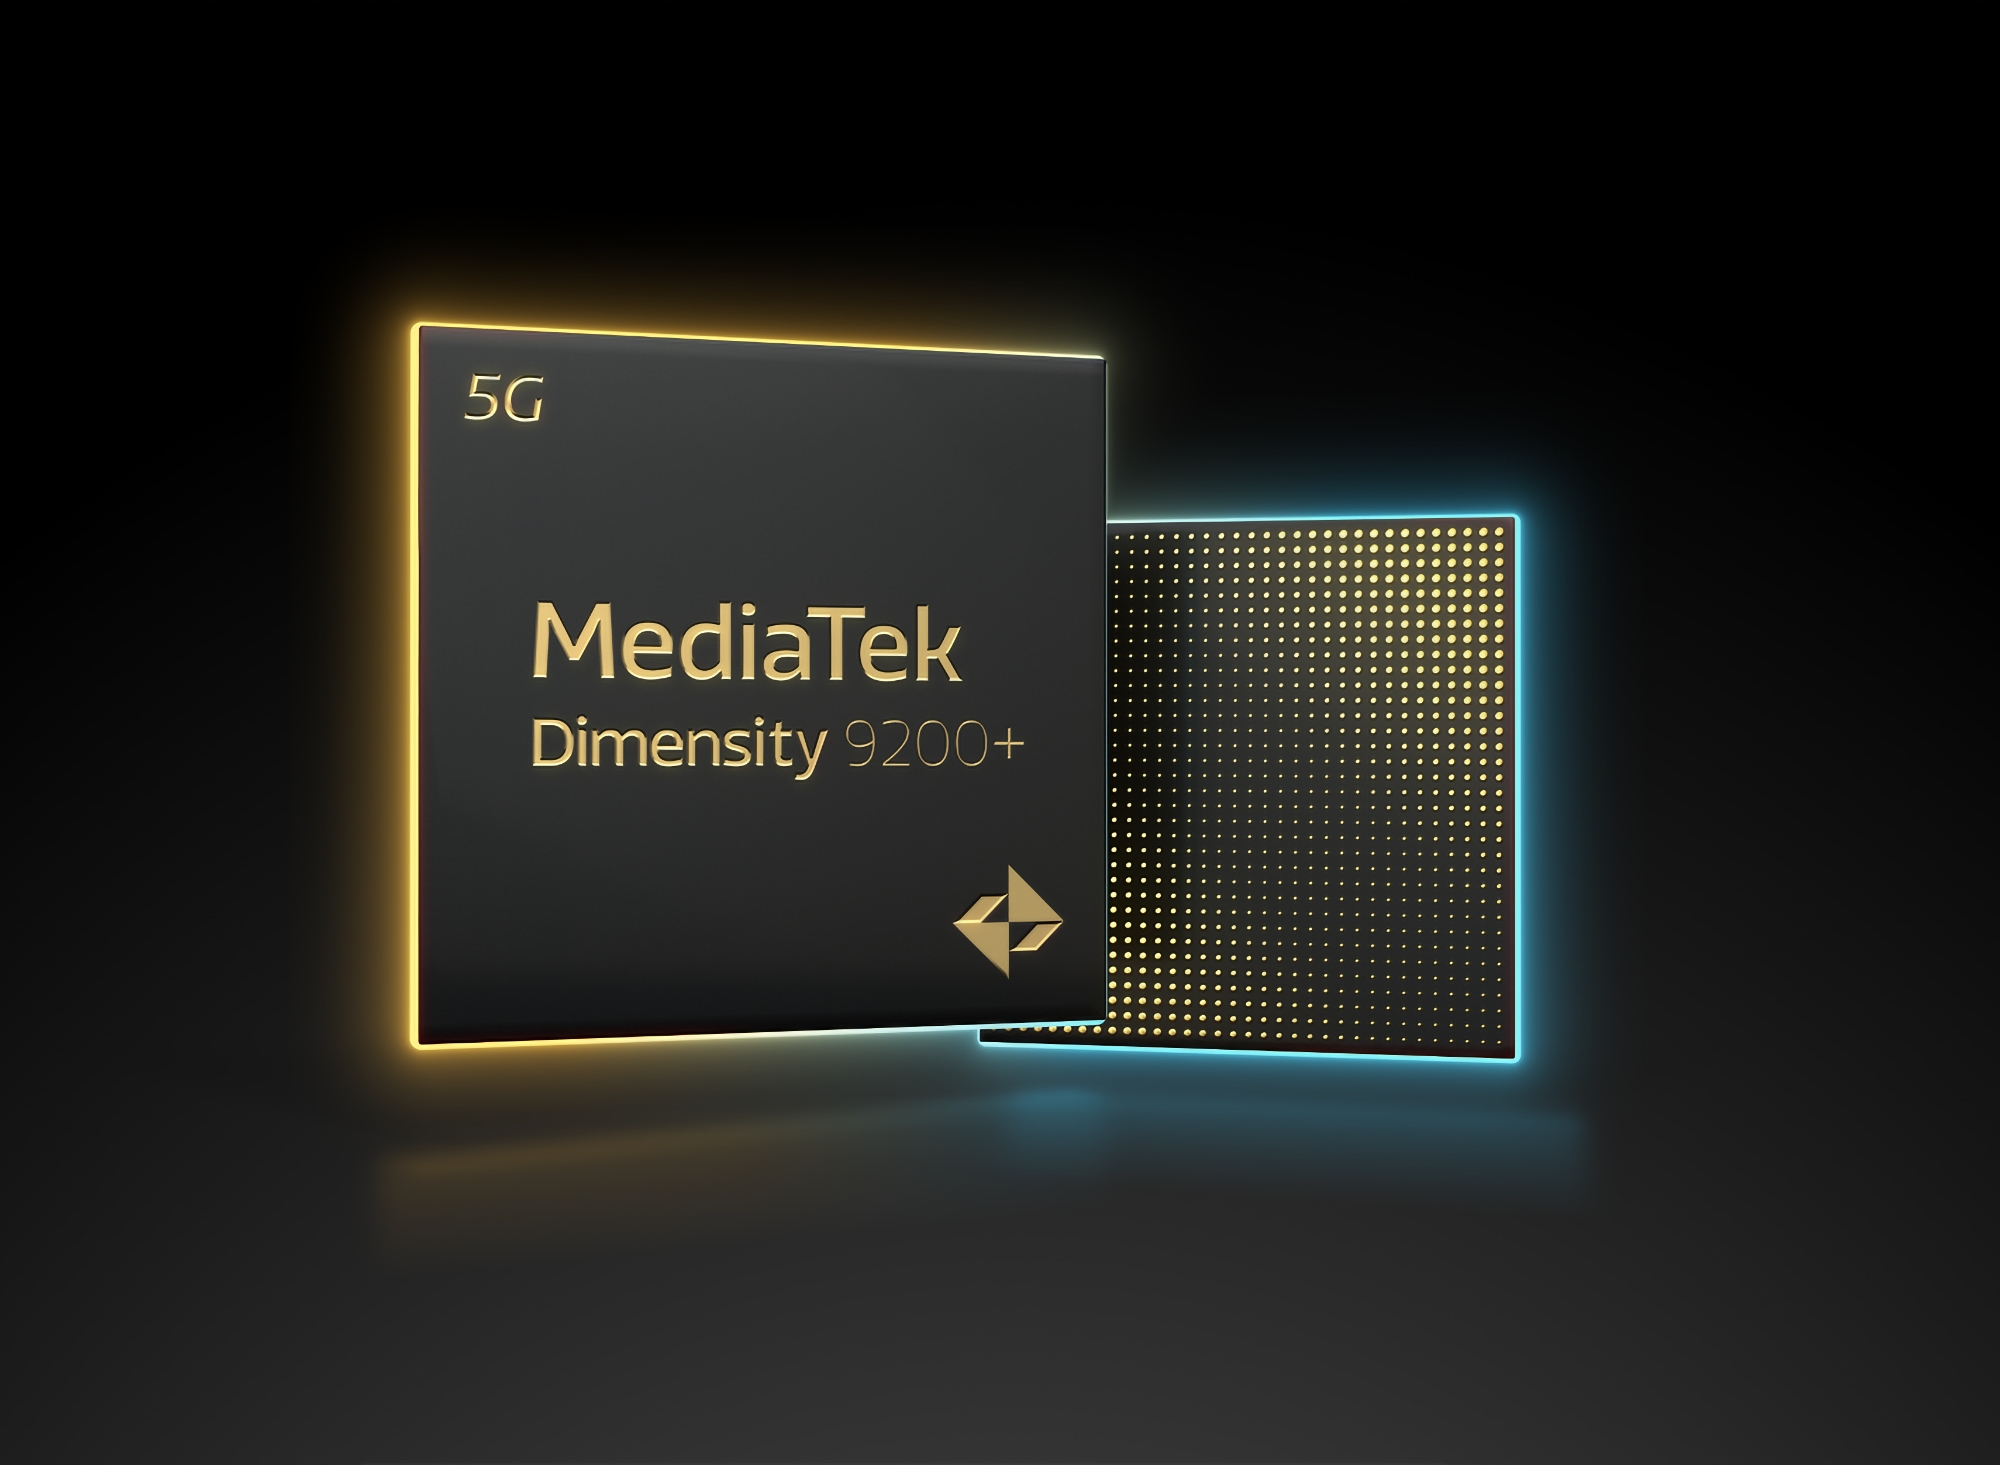 MediaTek stellt den Dimensity 9200+ vor: eine übertaktete Version des Flaggschiff-Chips Dimensity 9200